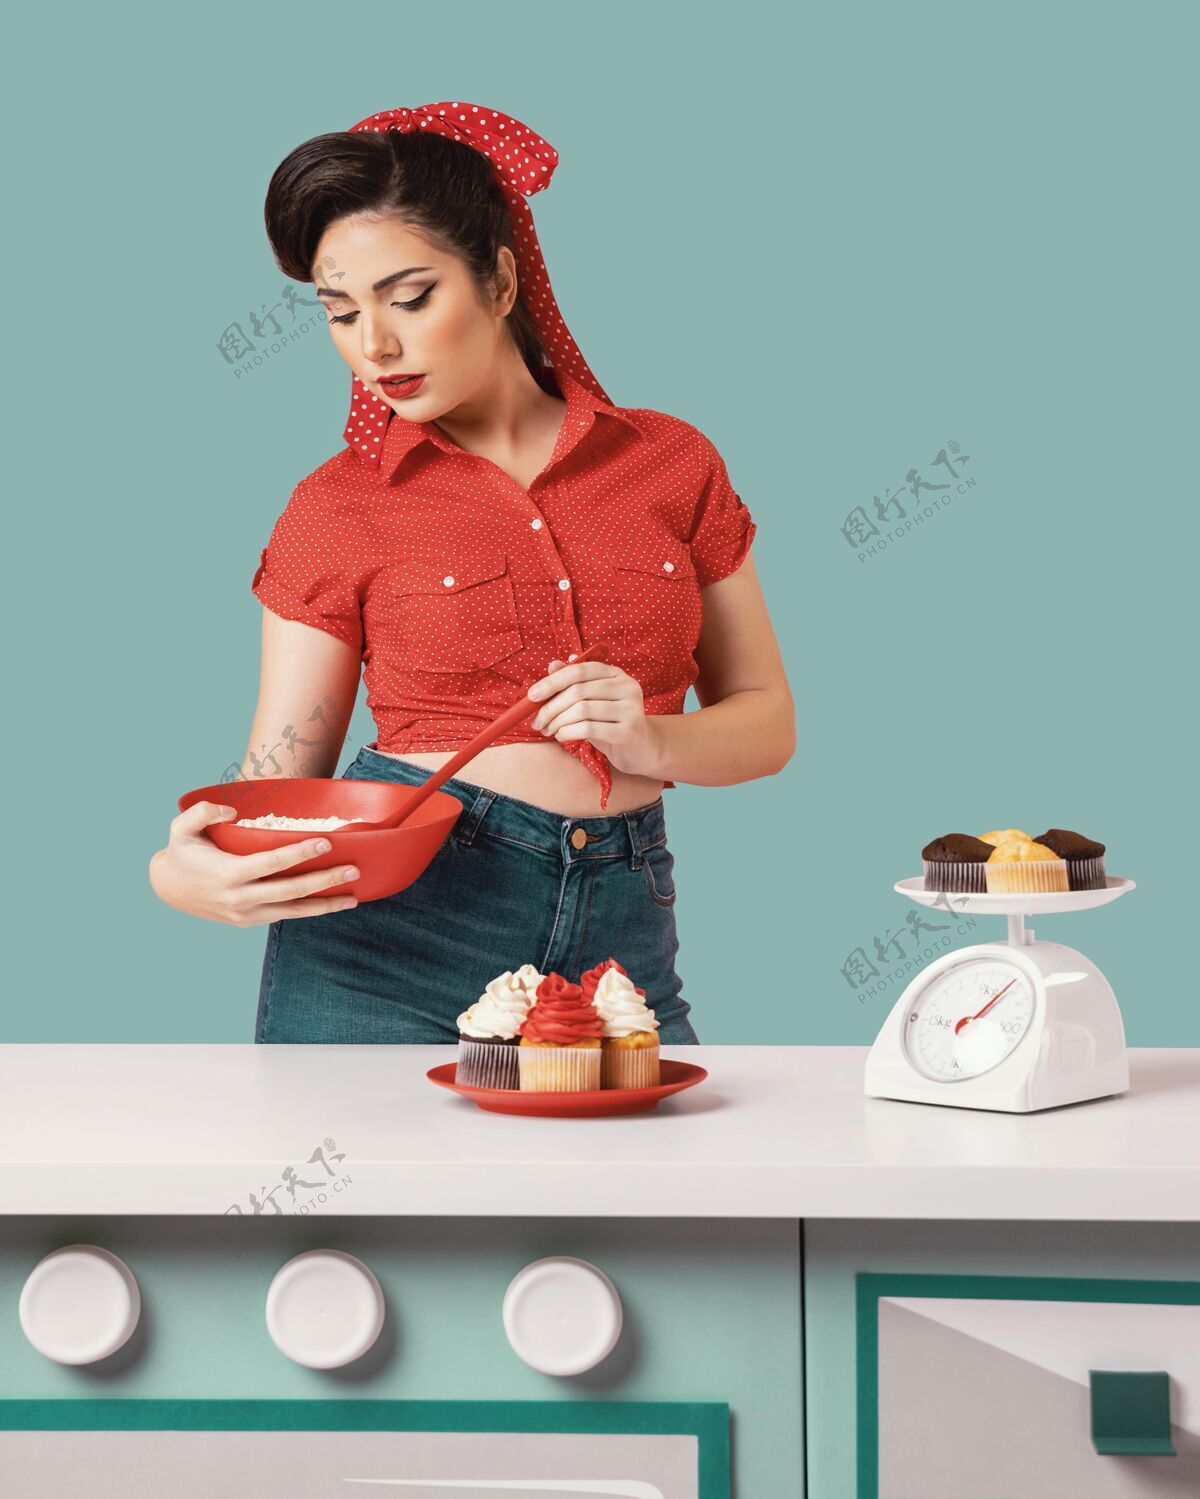 姿势复古小妞在厨房摆造型纸杯蛋糕年轻魅力